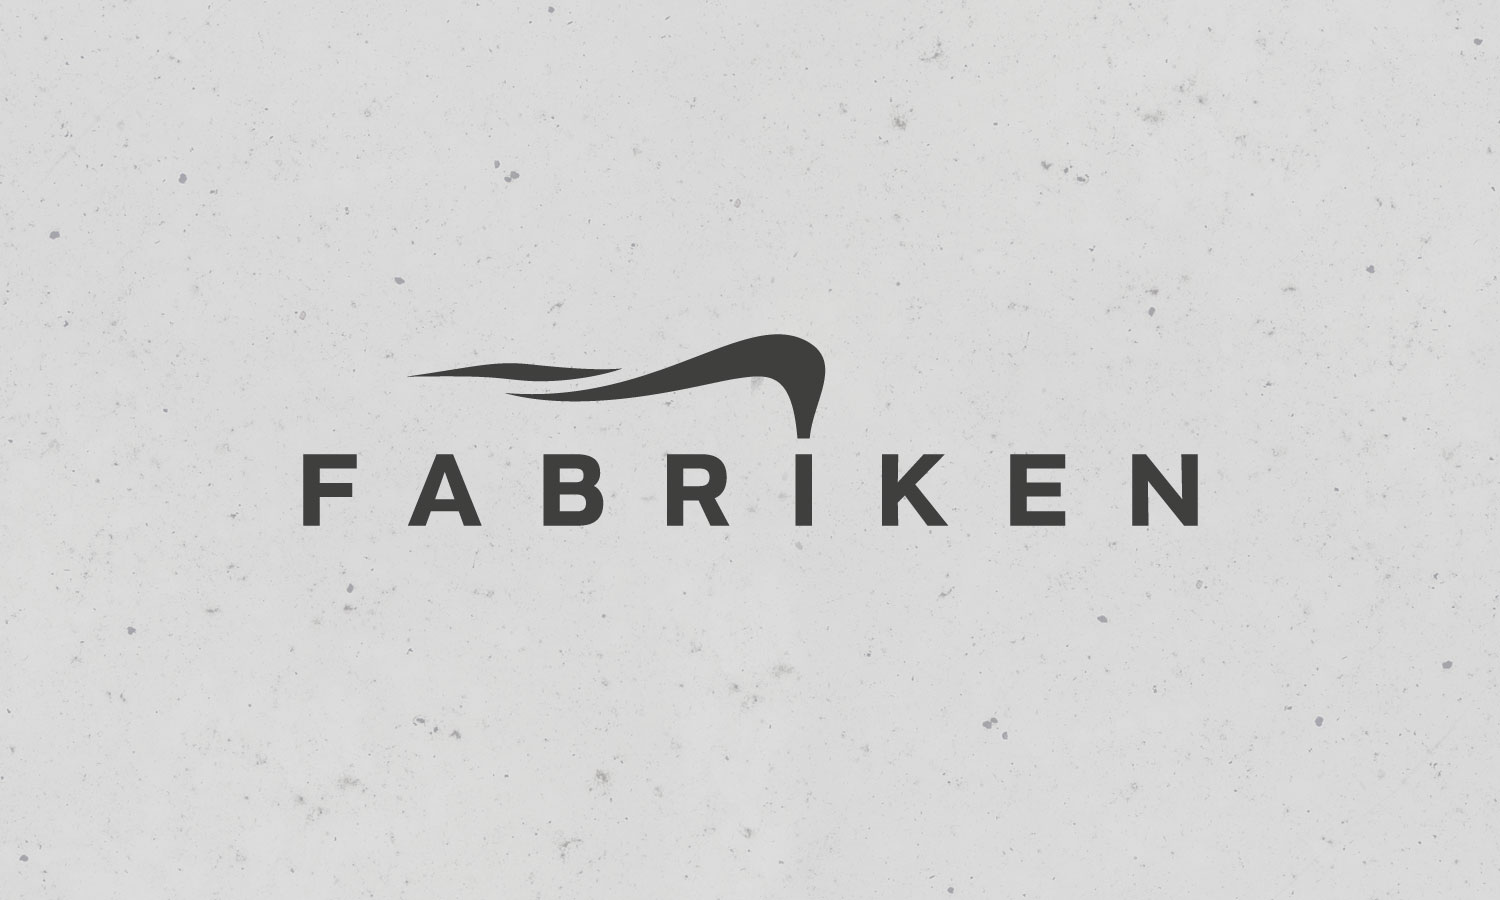 Fabriken logotype by Viktor Lanneld